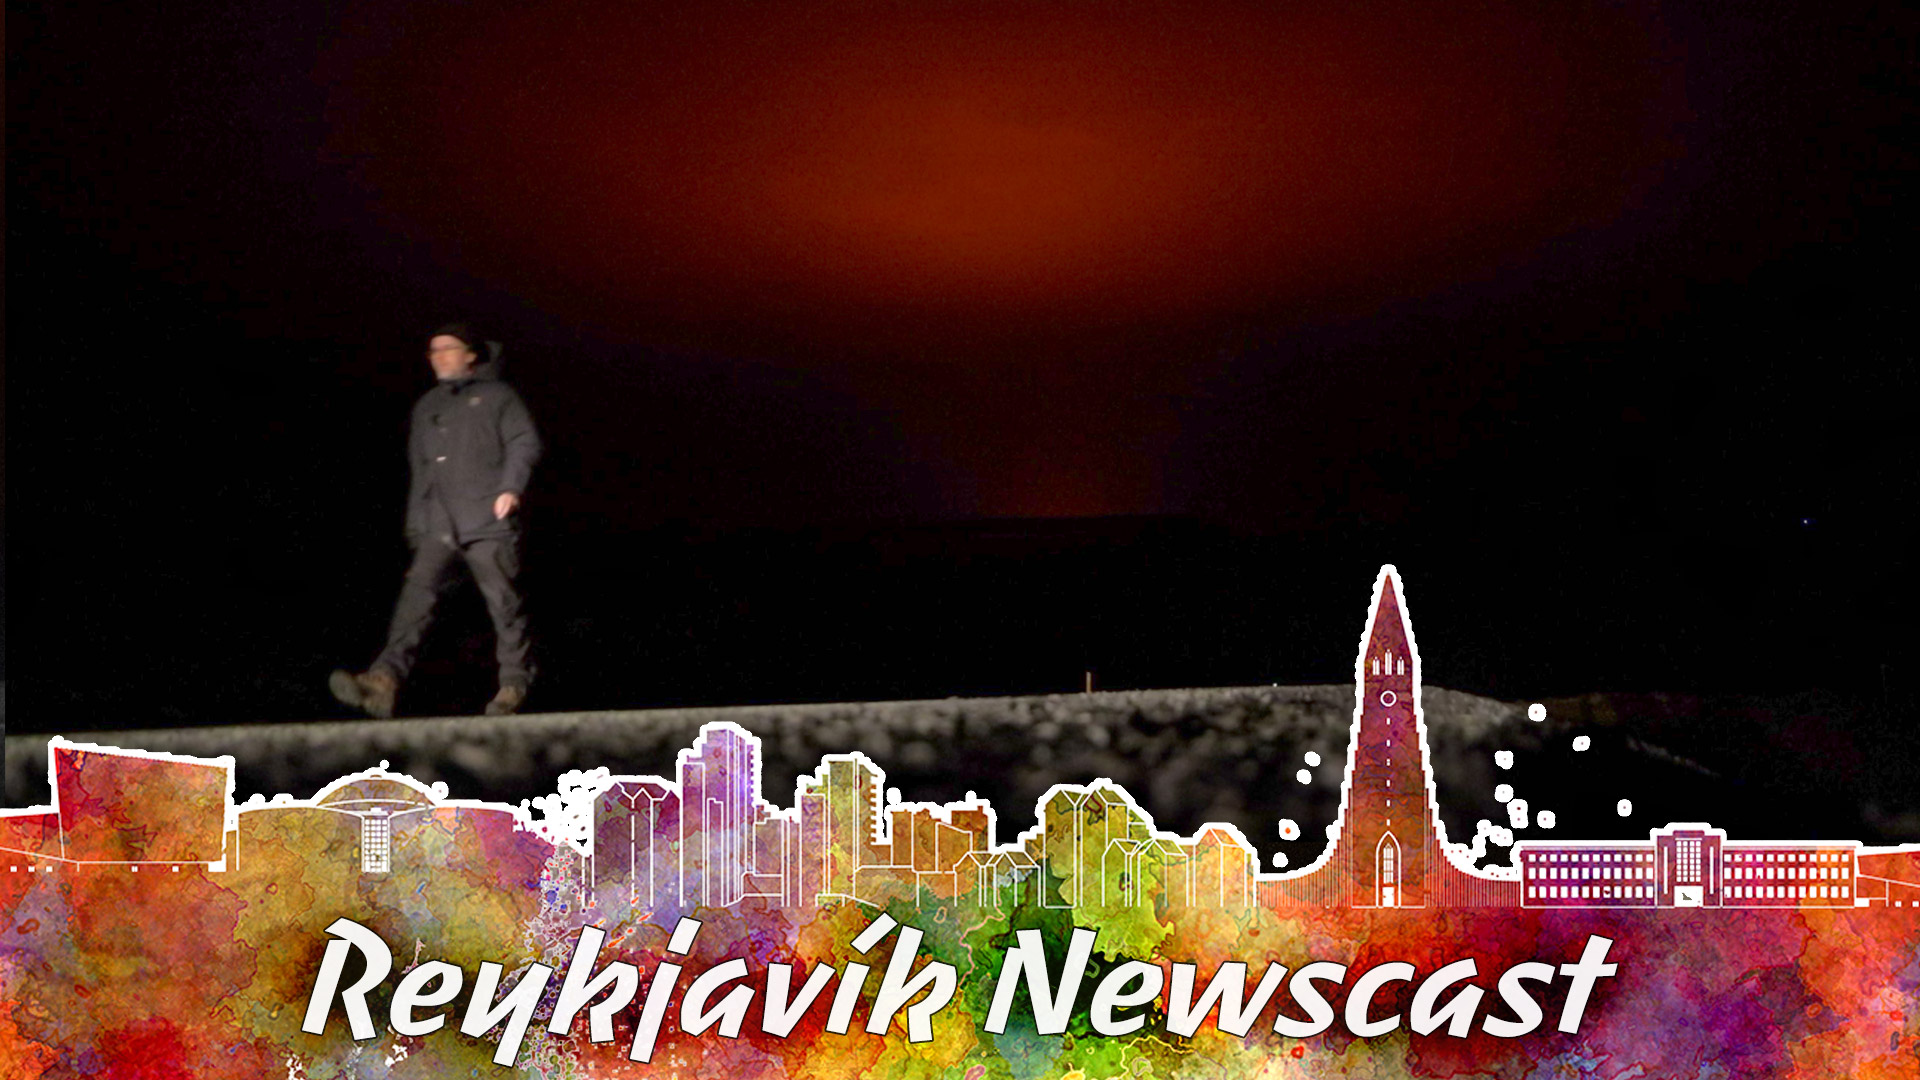 From Iceland - News magazine RVK # 85: Eruption has begun!